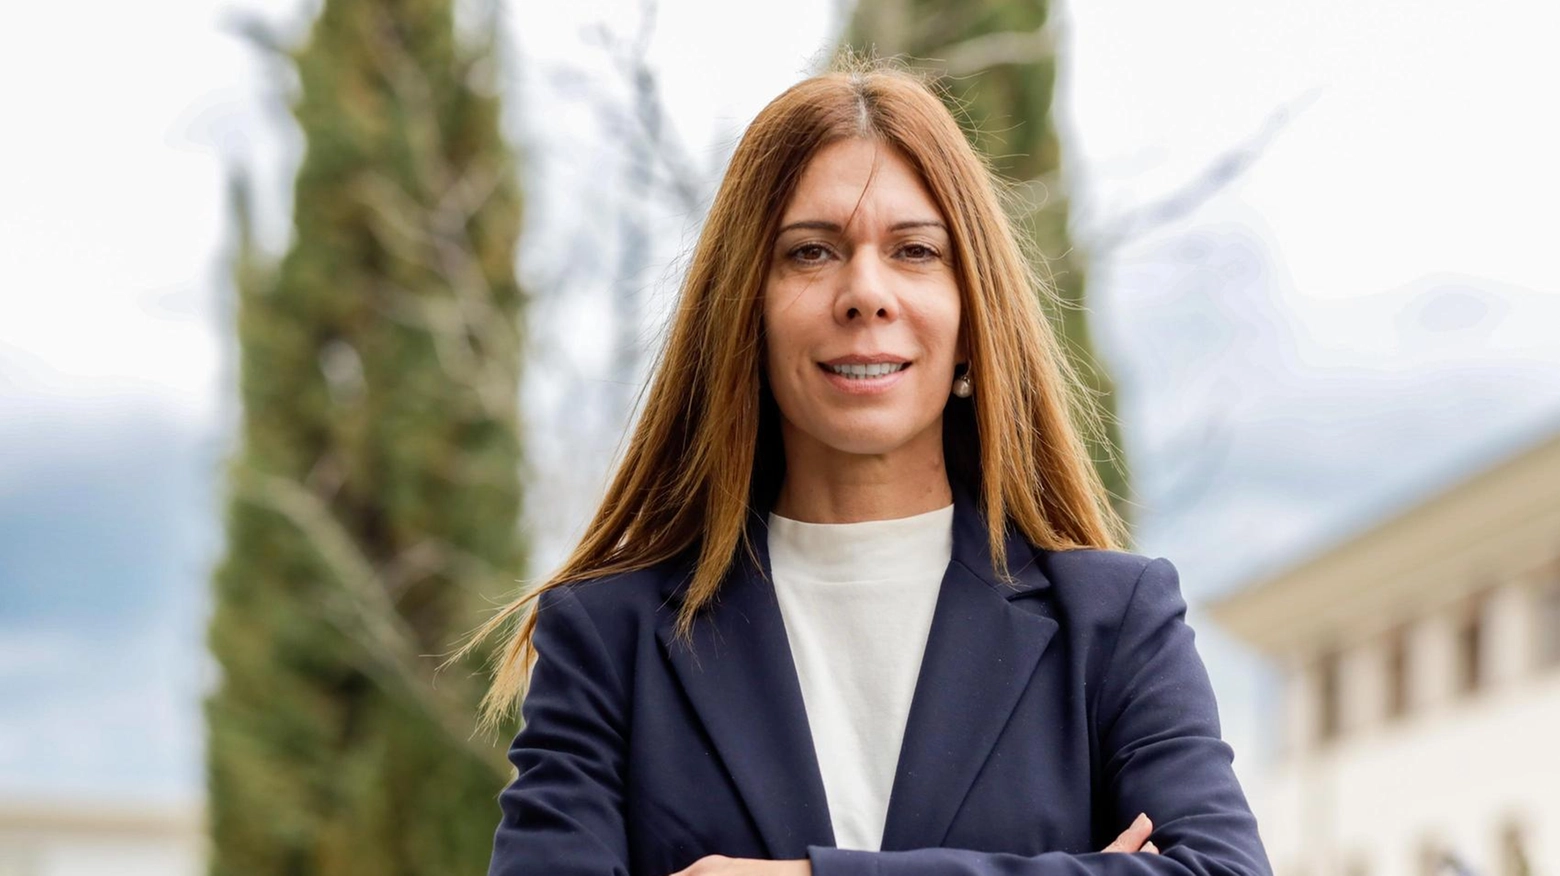 Monia Catalano candidata sindaco: "Un progetto politico senza ideologie"